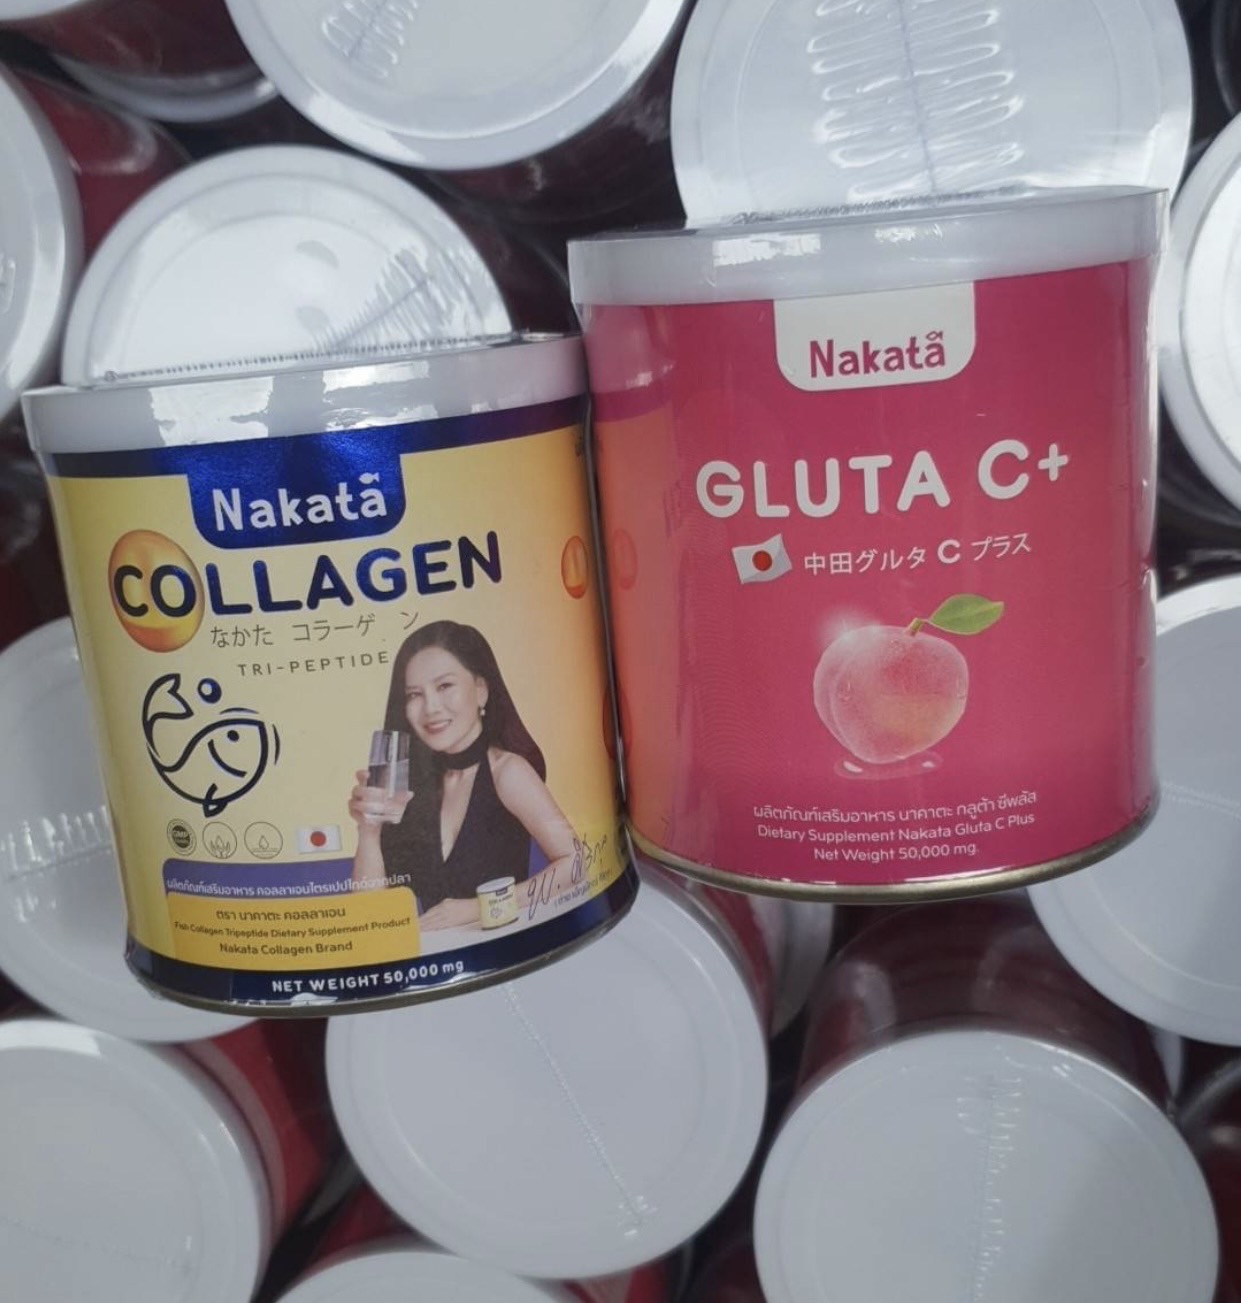 รูปภาพที่1 ของสินค้า : 1 แถม 1 Nakata Collagen + Gluta C+  นาคาตะ คอลลาเจน กลูต้าซีพลัส สูตรบำรุงผิวขาวเร่งด่วน นำเข้าจากญี่ปุ่น